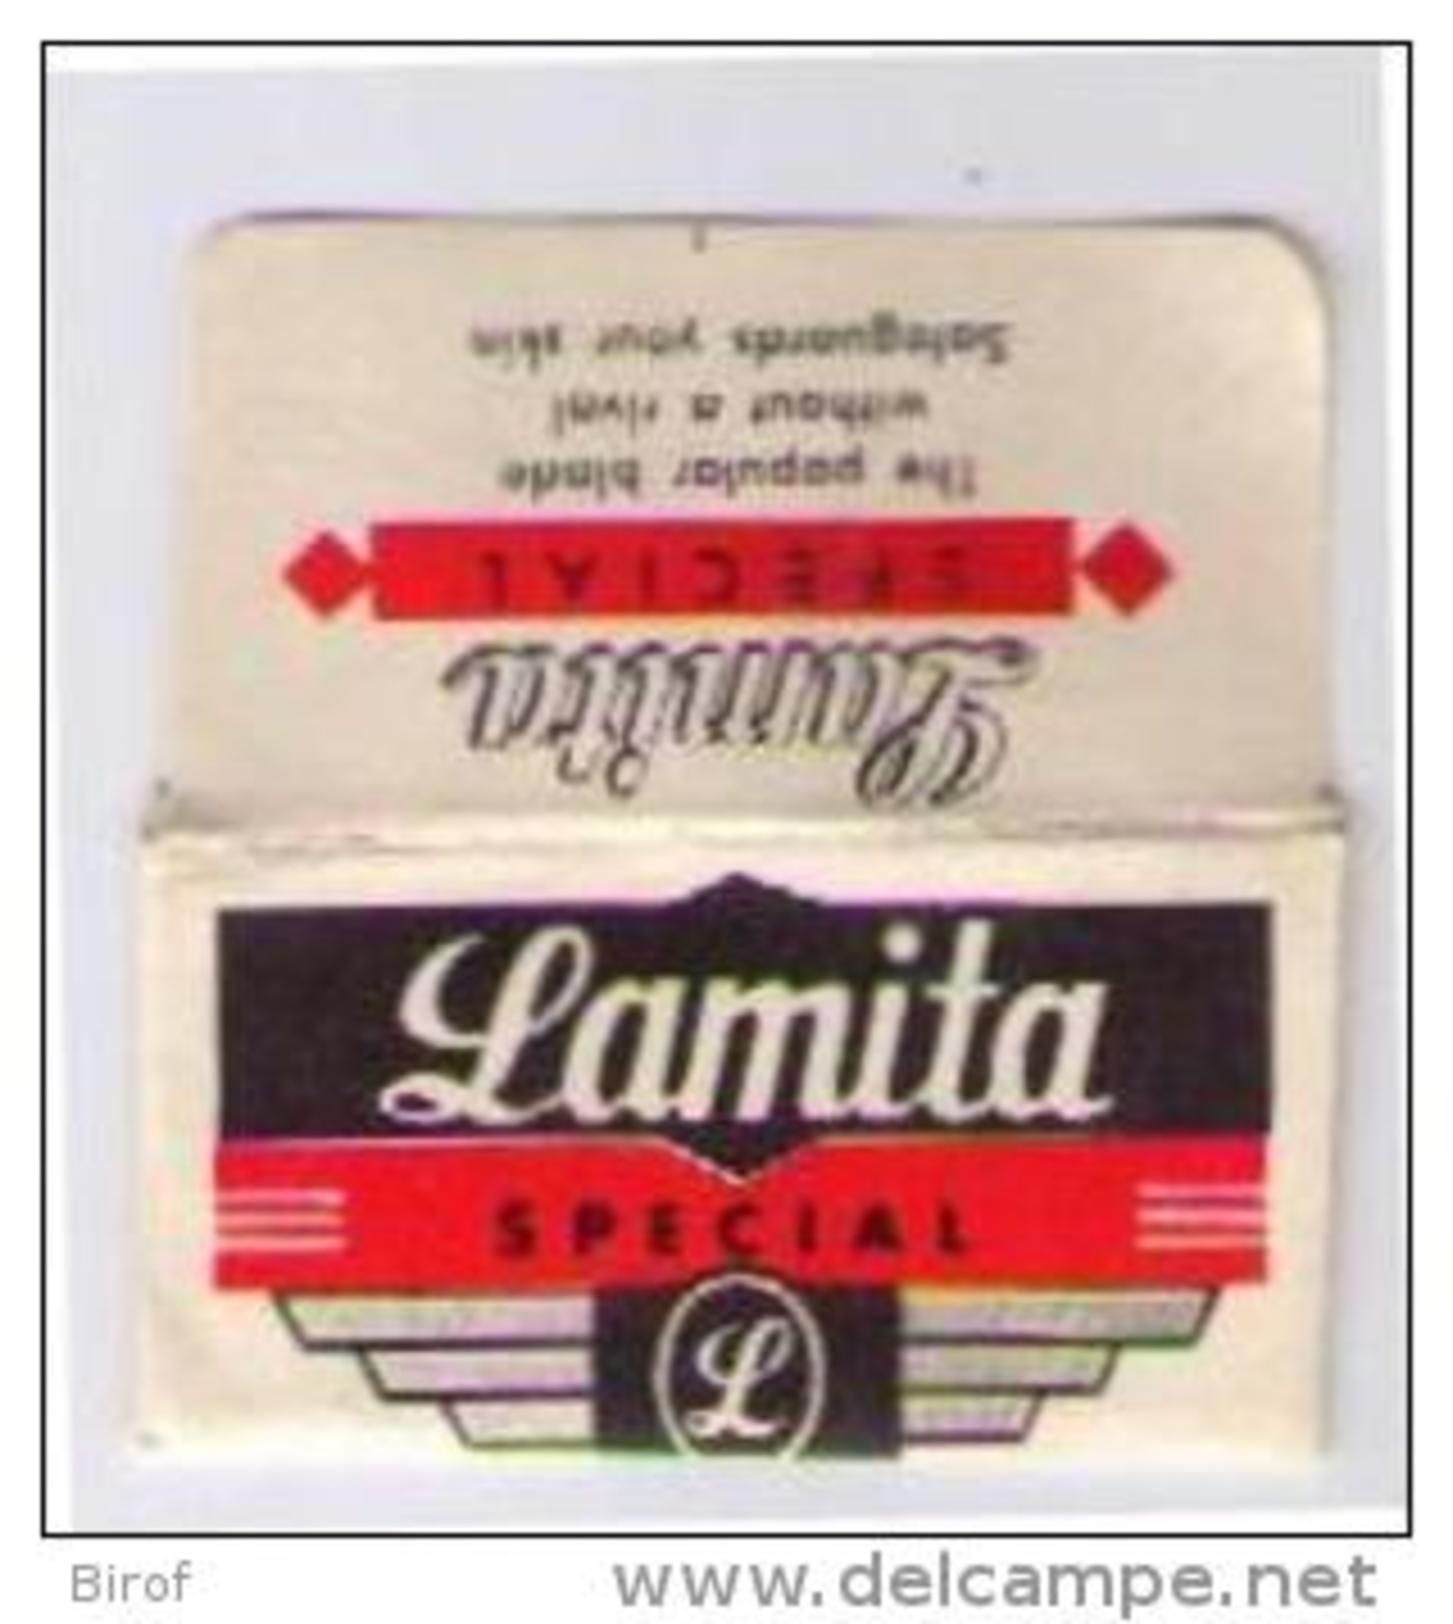 LAMETTA DA BARBA - LAMITA SPECIAL - Razor Blades